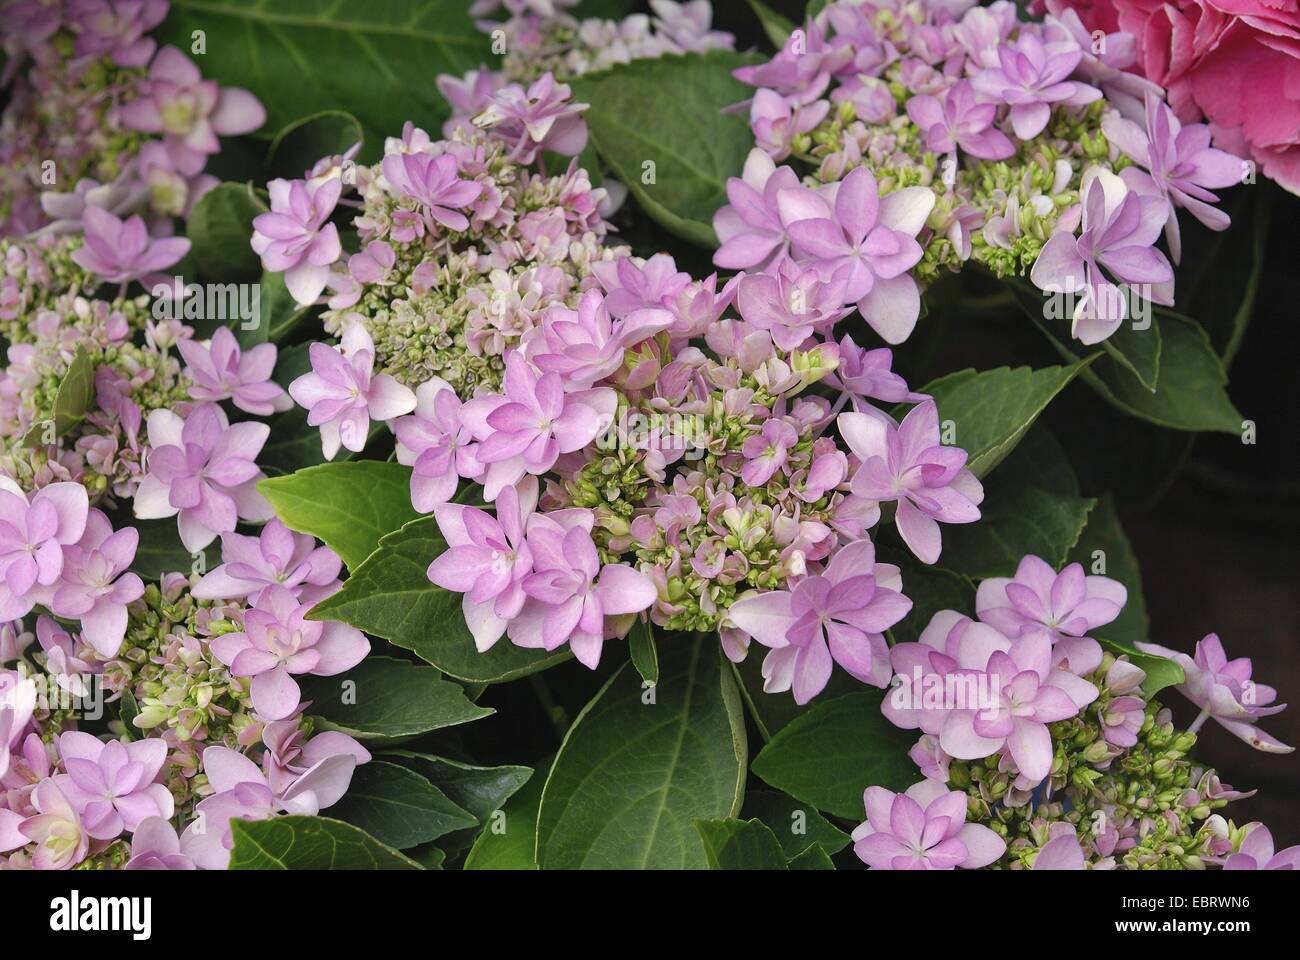 Hortensia jardin dentelle, cap hortensia (Hydrangea macrophylla 'Romance', Hydrangea macrophylla Romance), le cultivar de Romance, blooming Banque D'Images